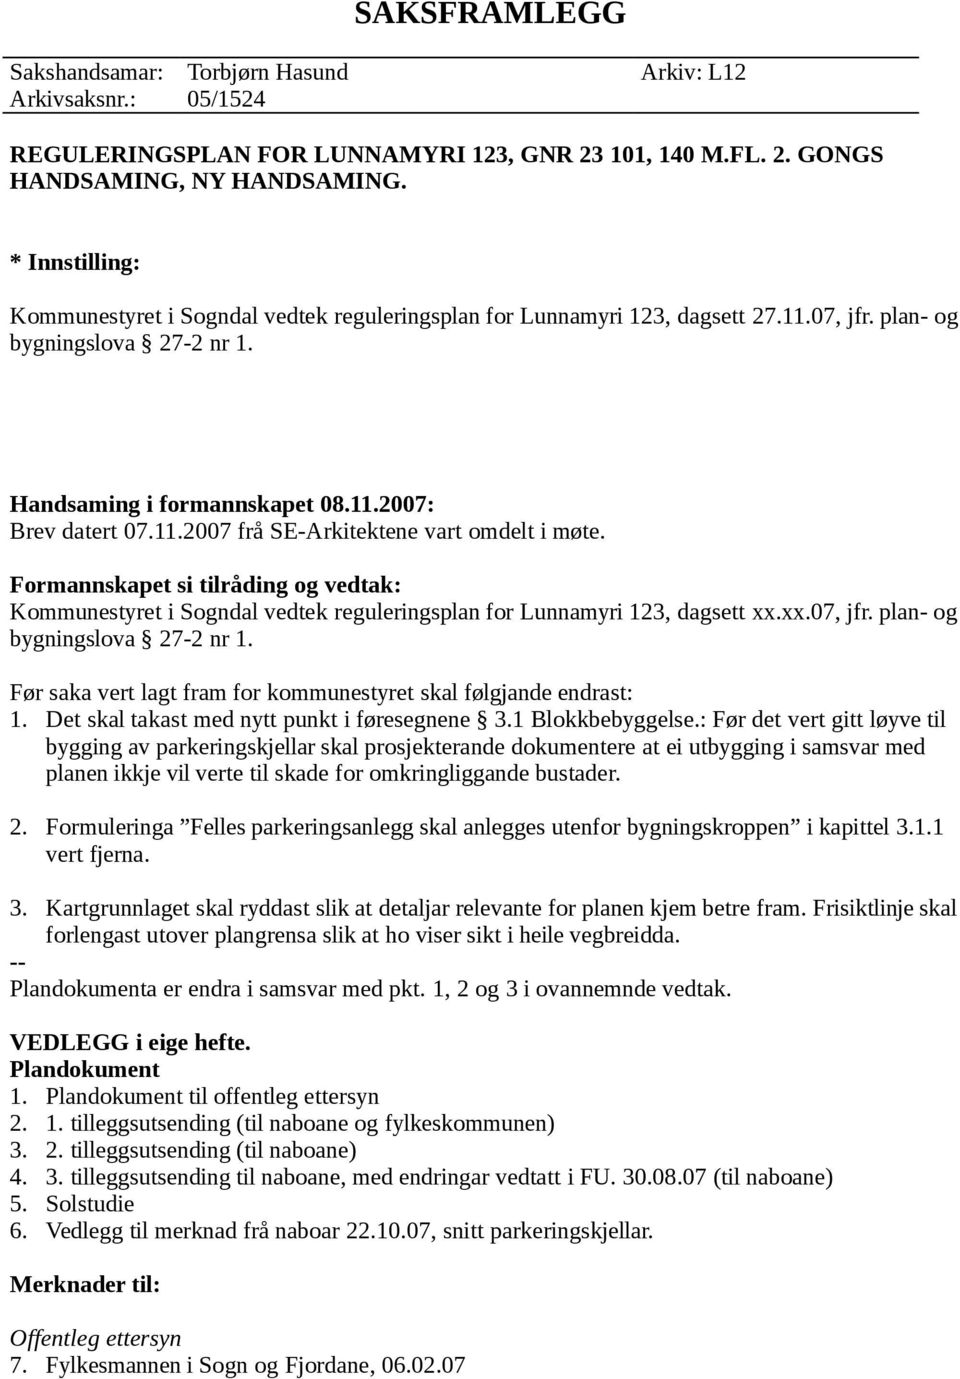 Formannskapet si tilråding og vedtak: Kommunestyret i Sogndal vedtek reguleringsplan for Lunnamyri 123, dagsett xx.xx.07, jfr. plan- og bygningslova 27-2 nr 1.